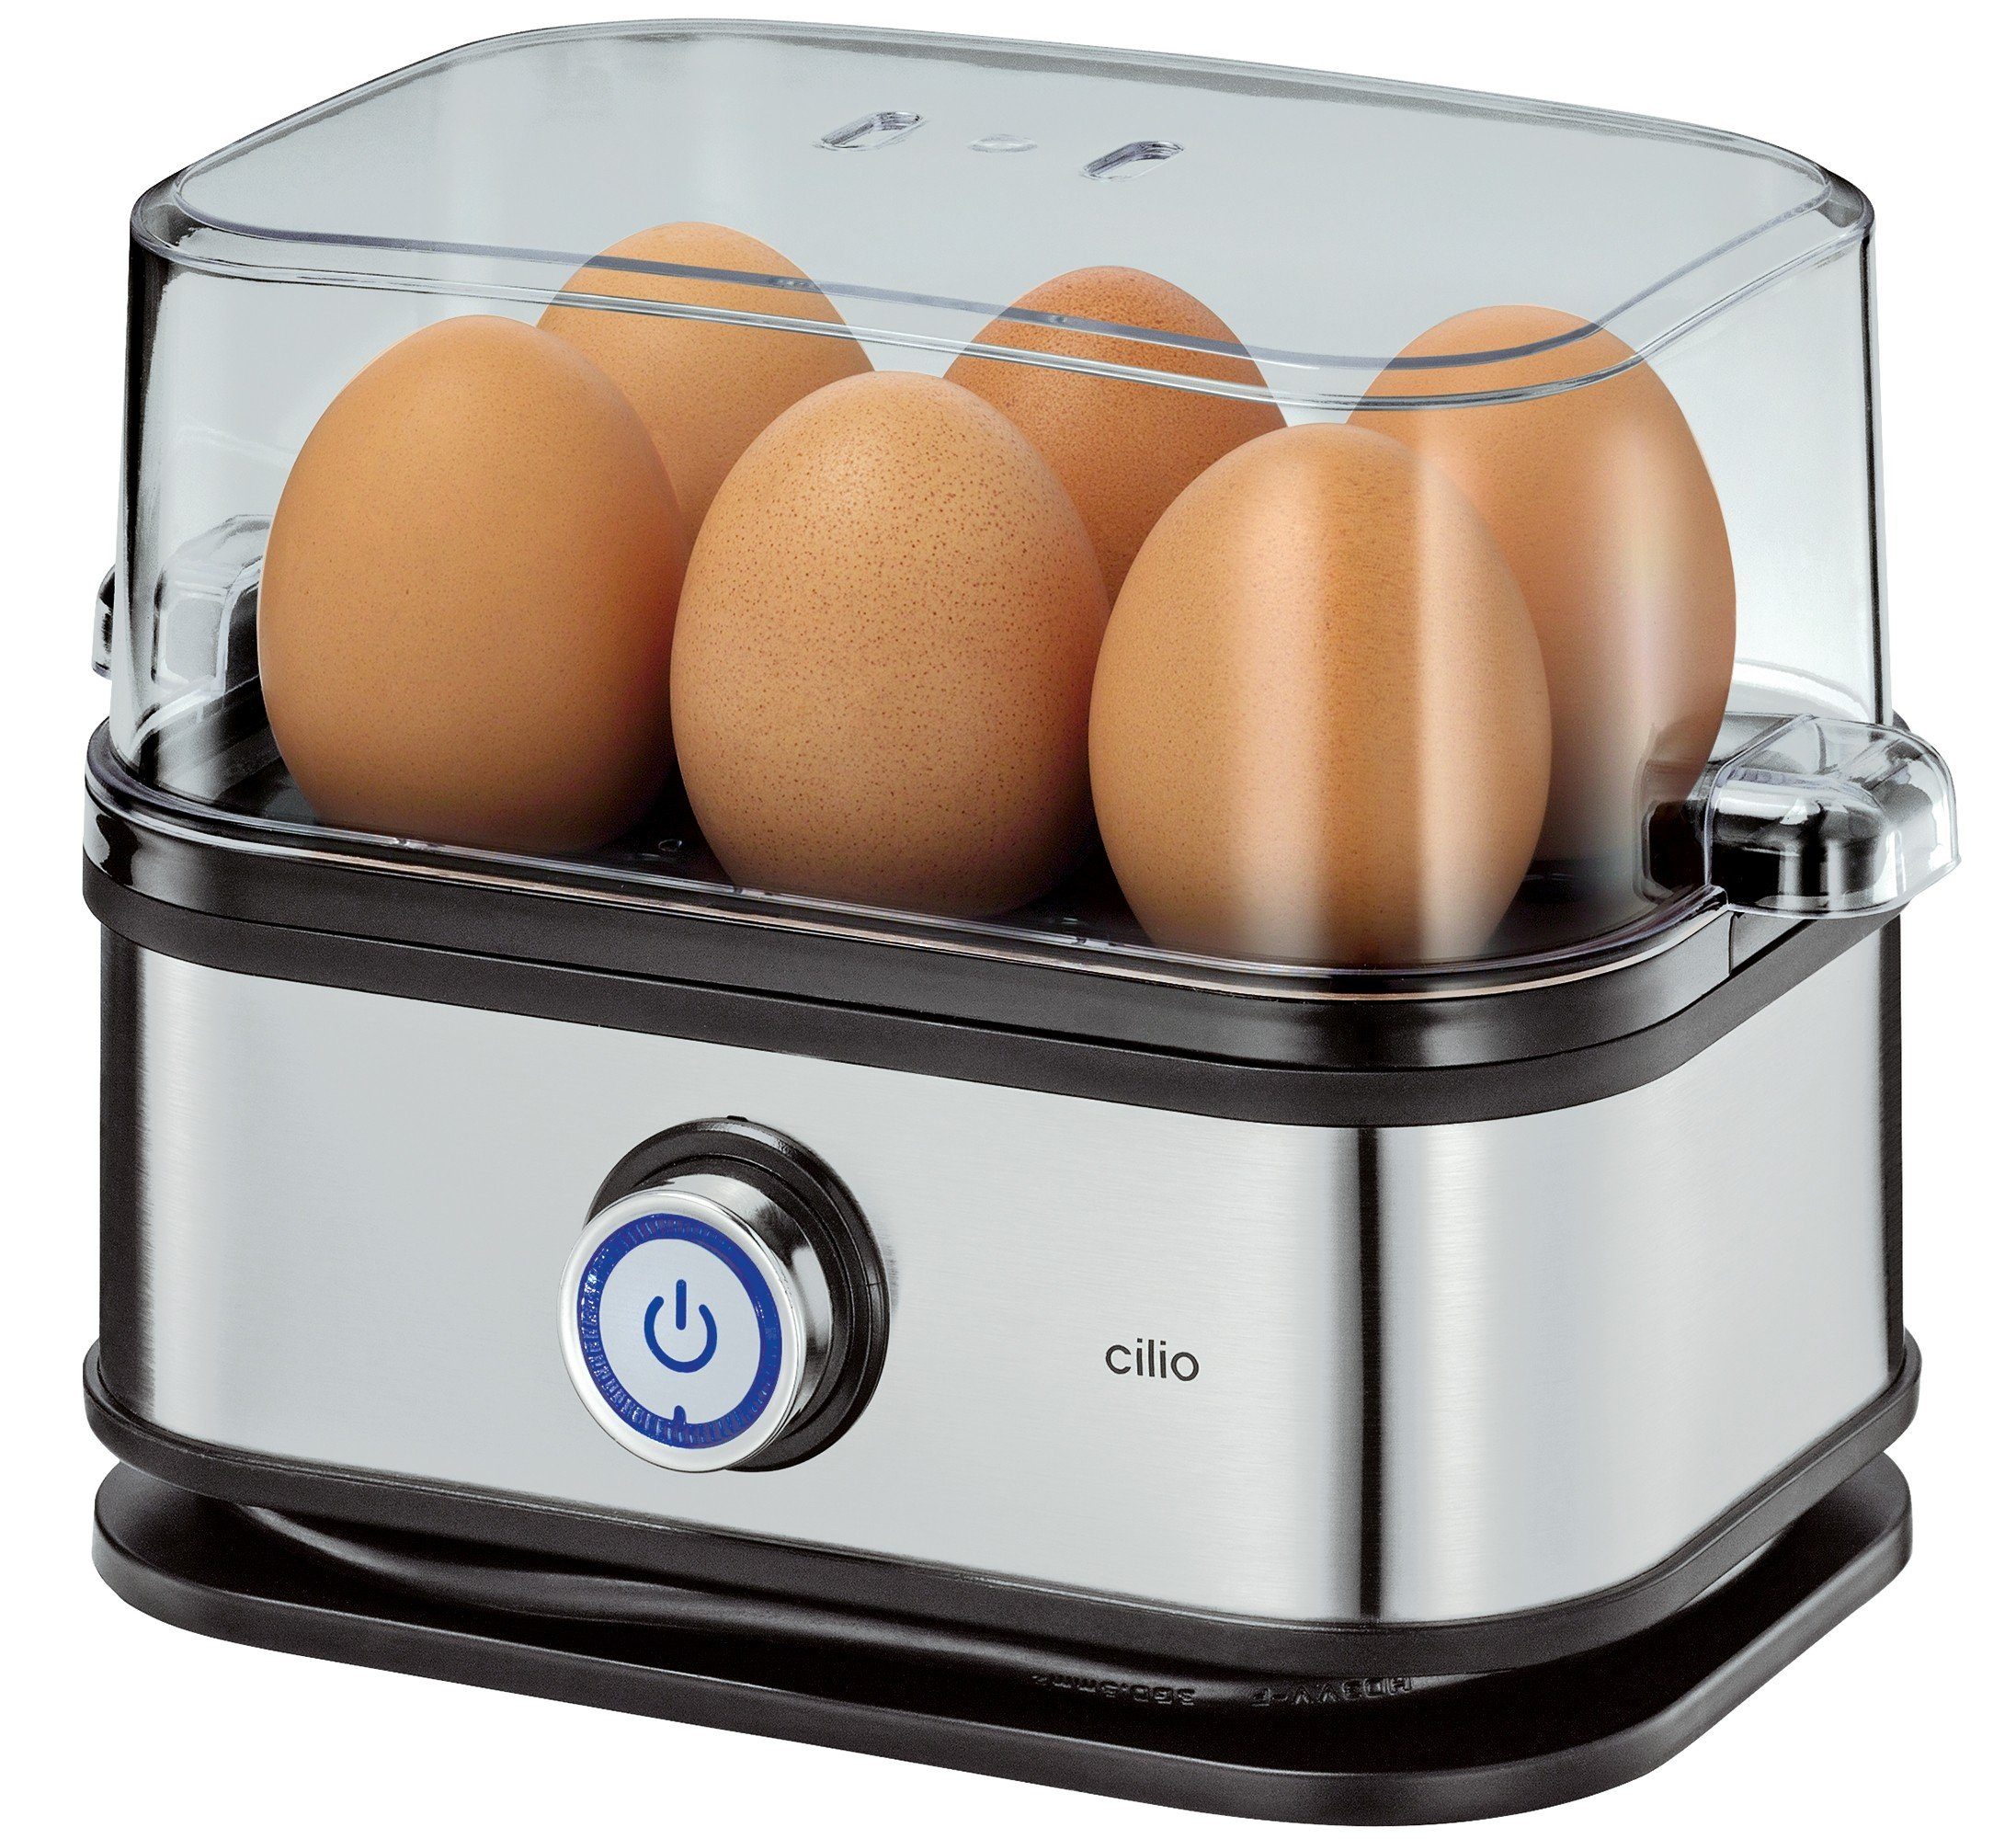 Cilio Eierkocher 6 Eierkocher inkl. Messbecher für Ei-Picker Edelstahl Eier und CILIO